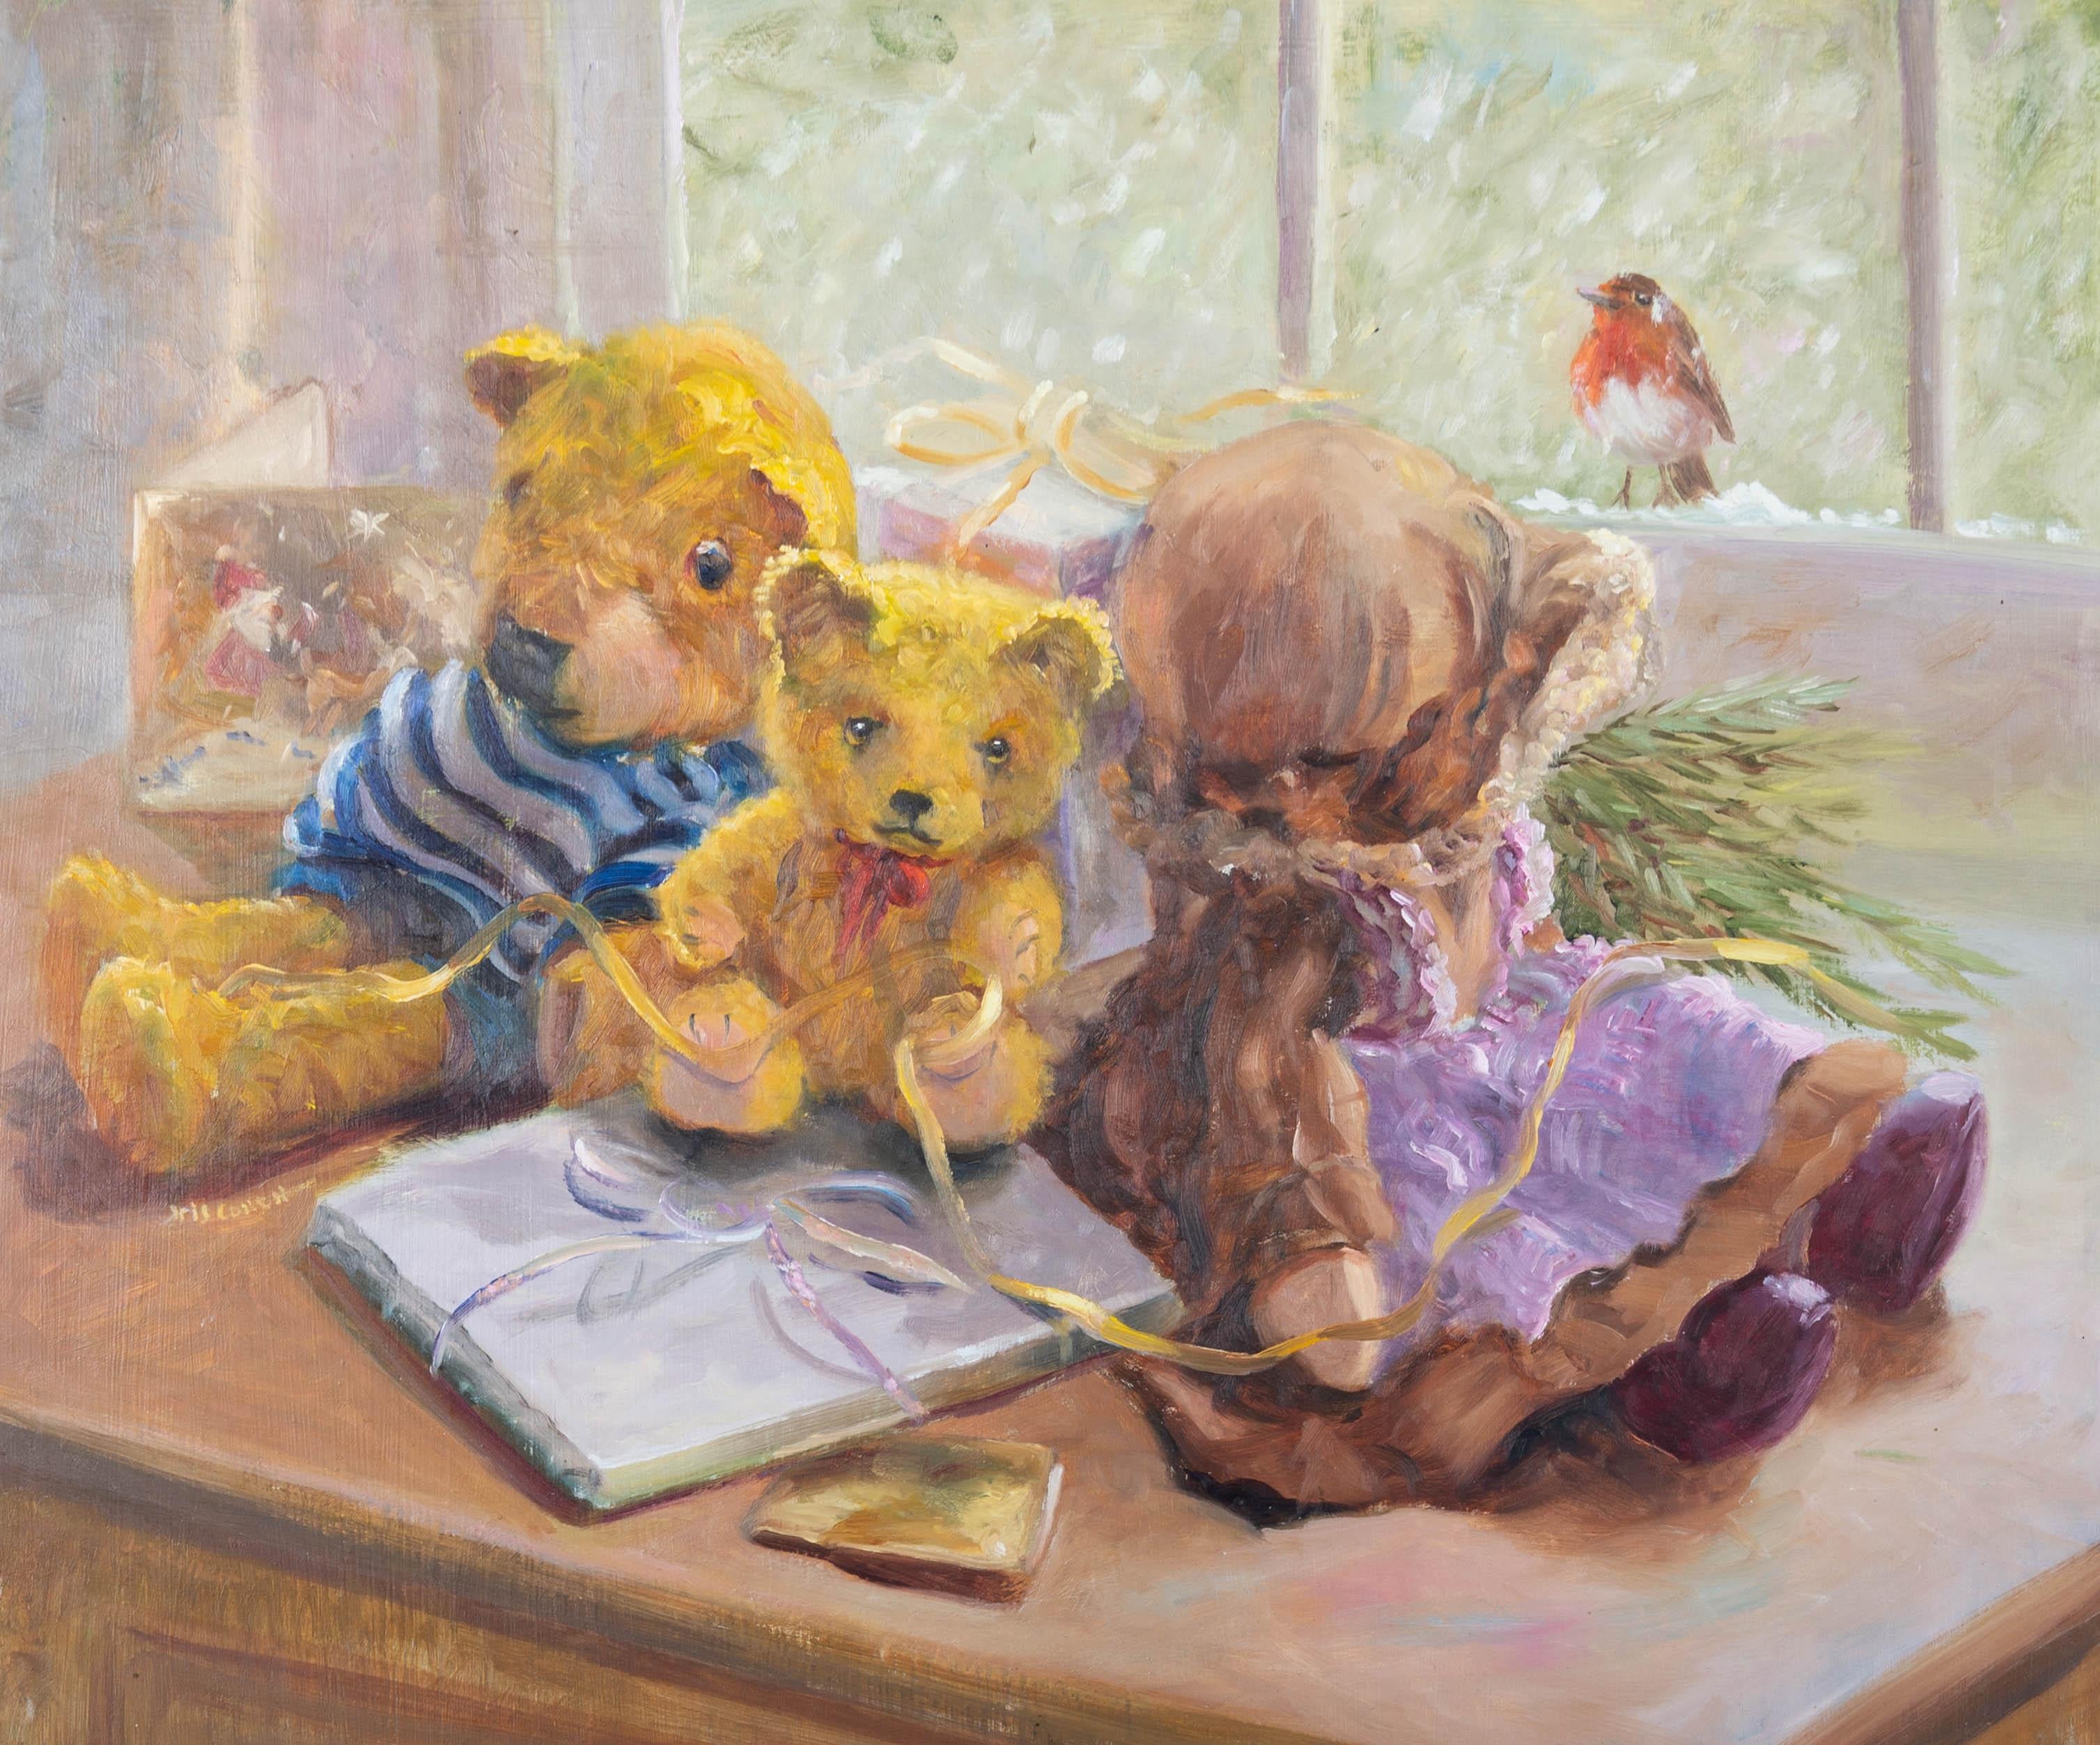 Une charmante étude d'ours en peluche et d'une poupée par l'artiste bien connue Iris Collett. À la fenêtre, un merle est assis dans la neige et regarde dans la maison les jouets qui entourent un petit cadeau. Peint par des coups de pinceau